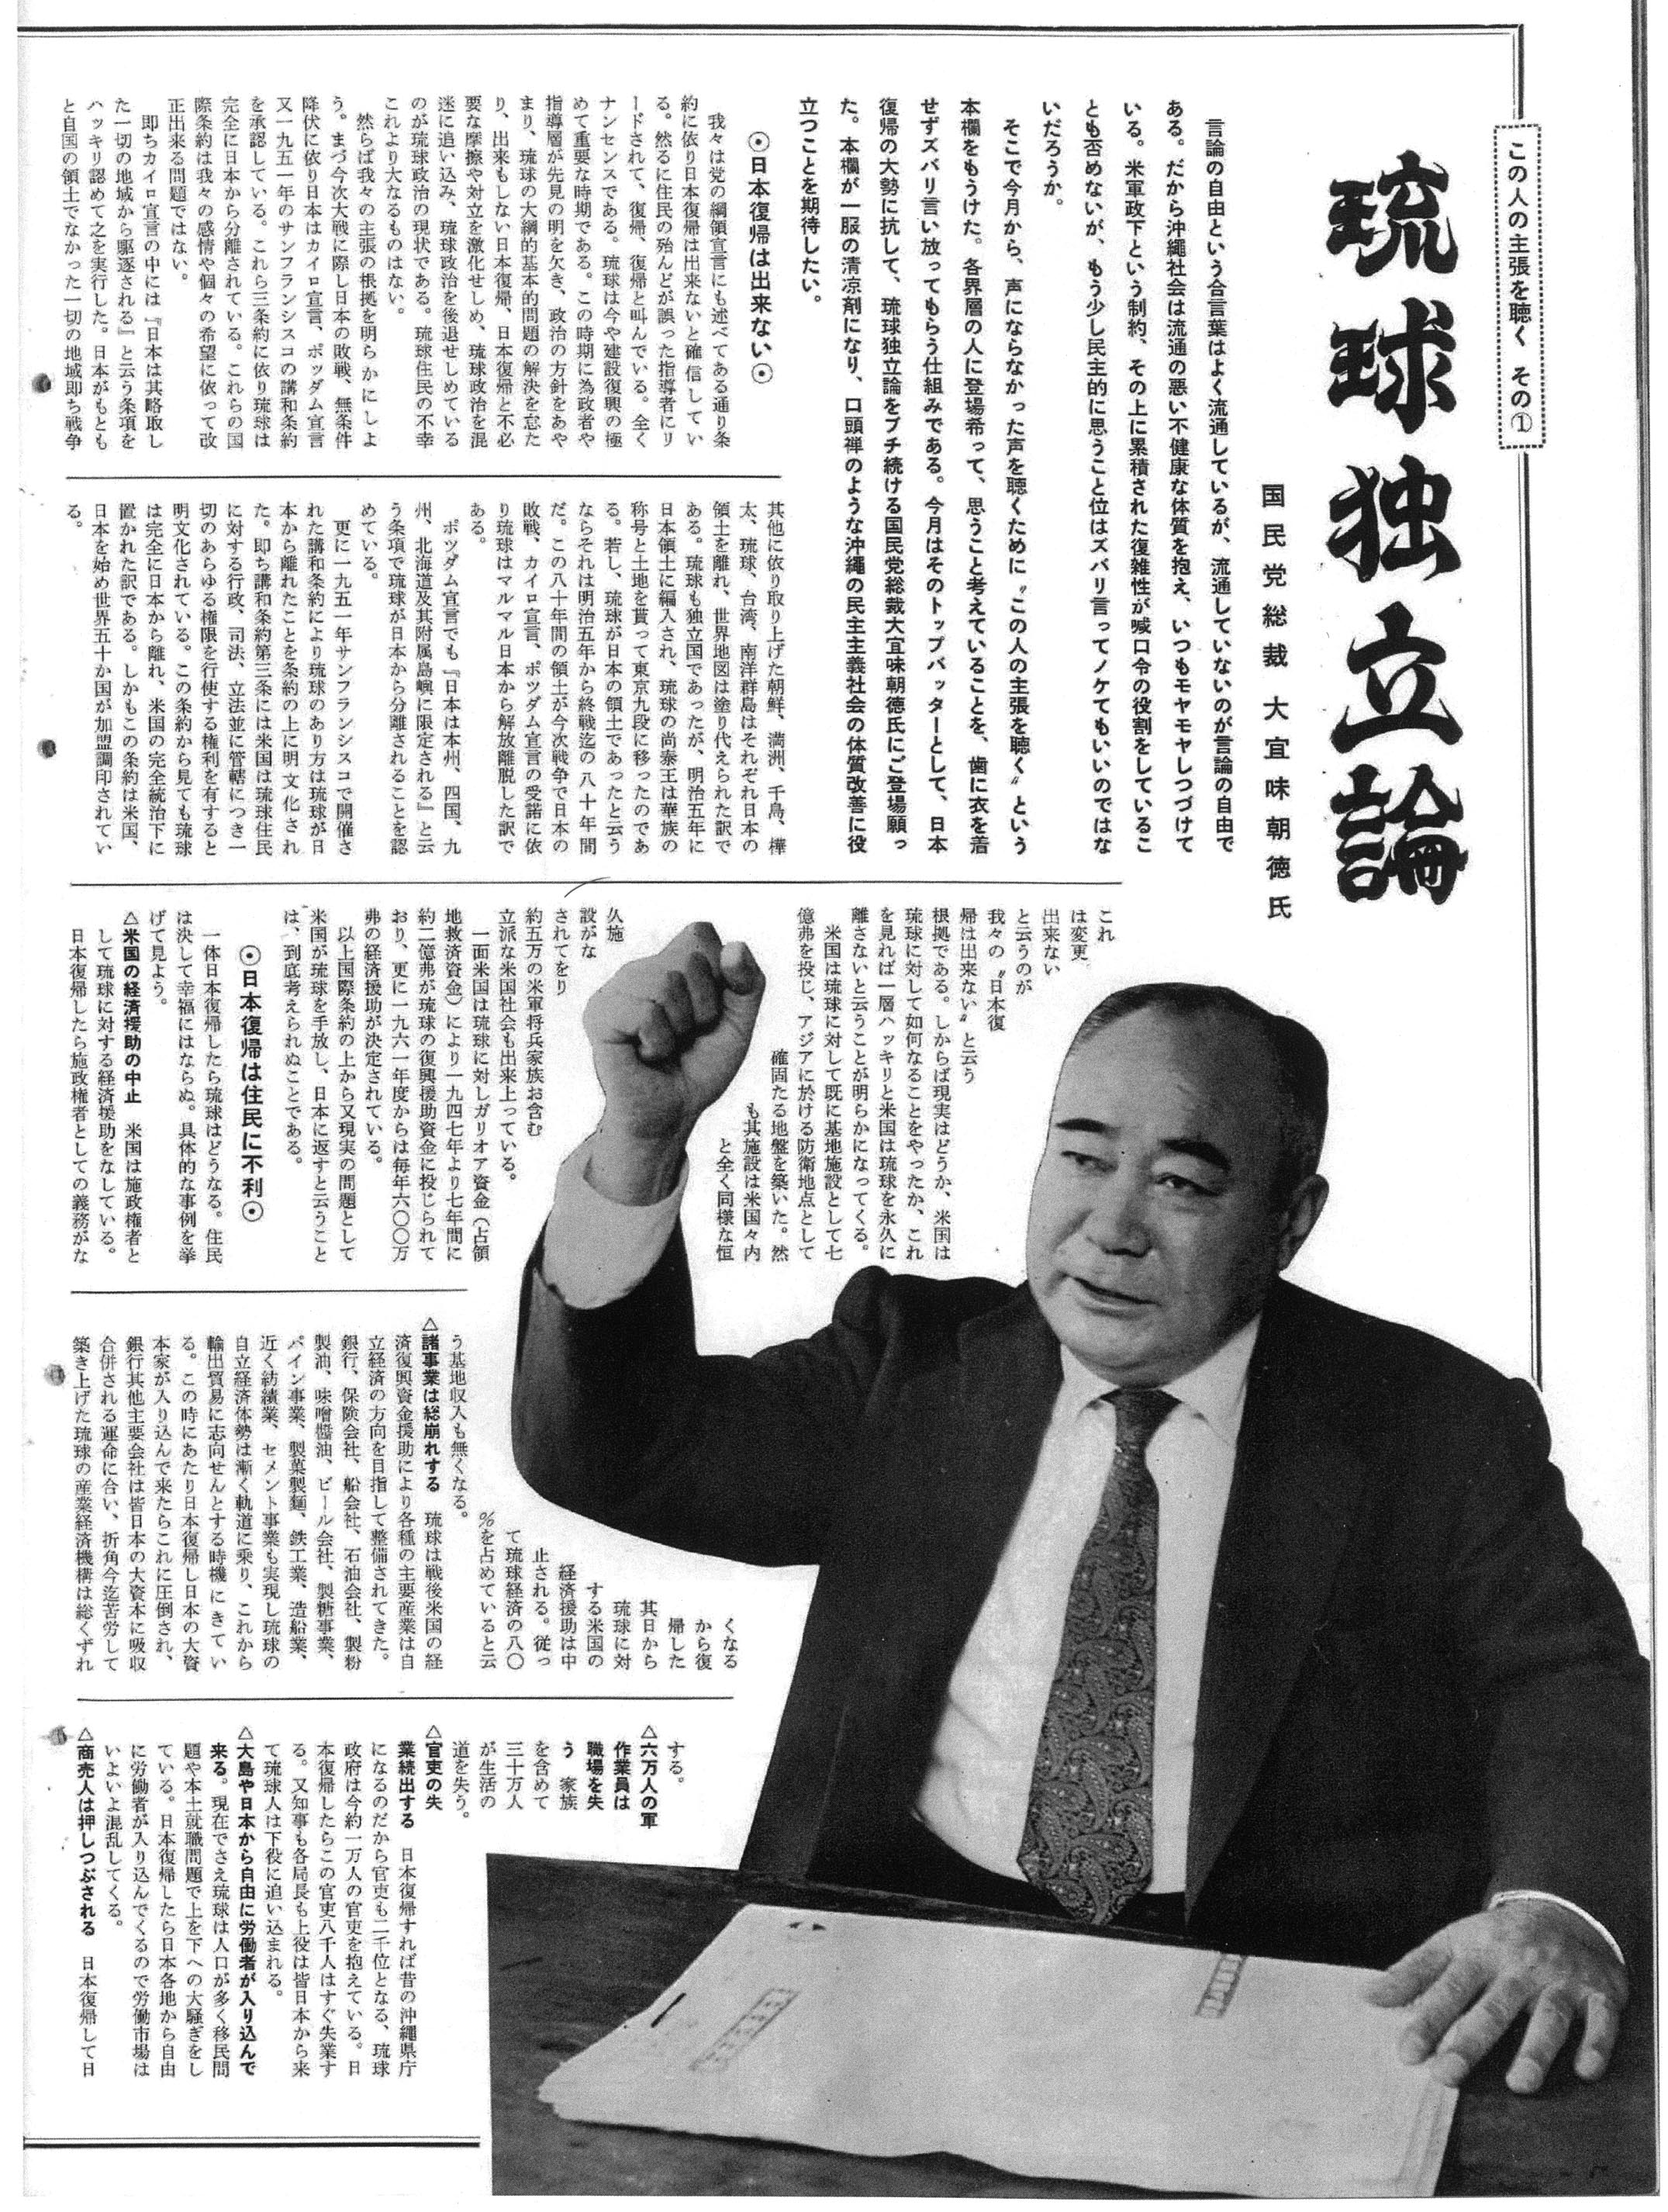 大宜味朝徳琉球独立論　オキナワグラフ　1961年3月号